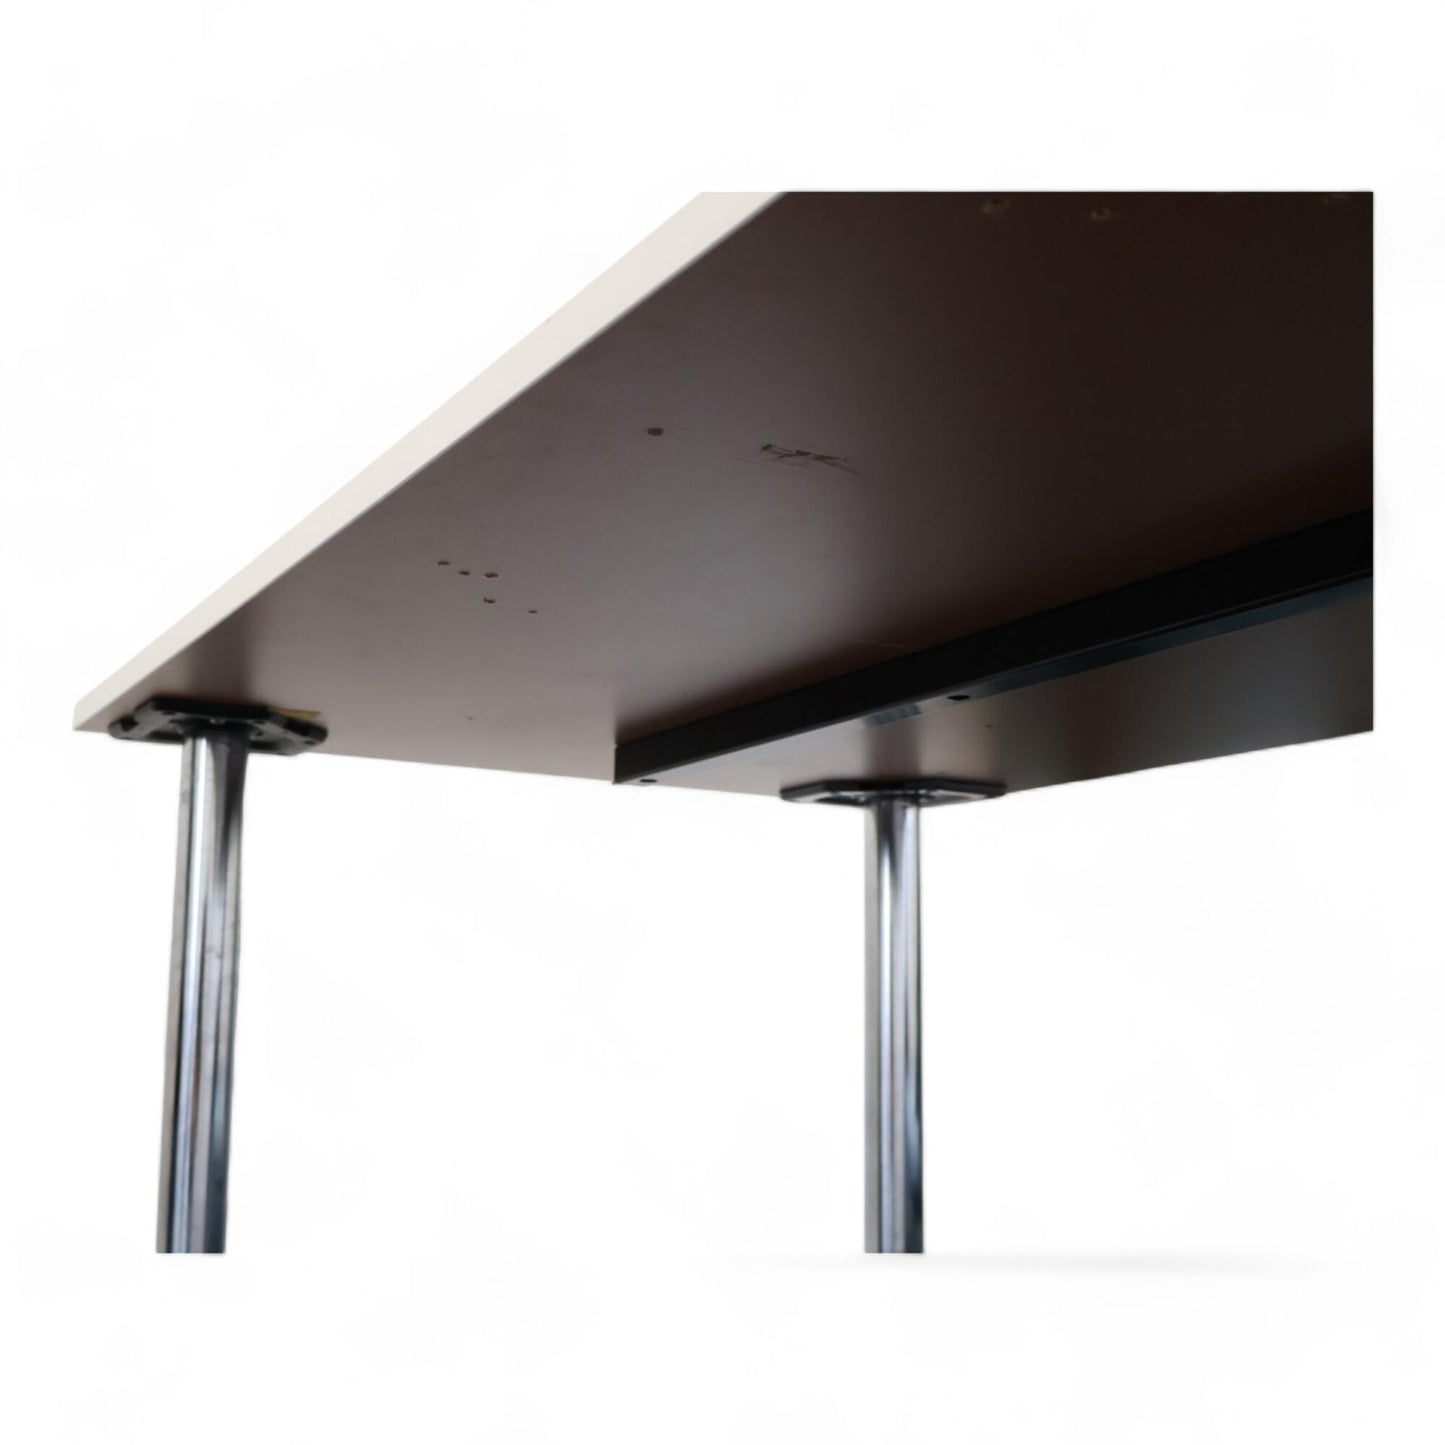 Utmerket tilstand | Stort hvitt skrivebord med krumme ben 160x80cm